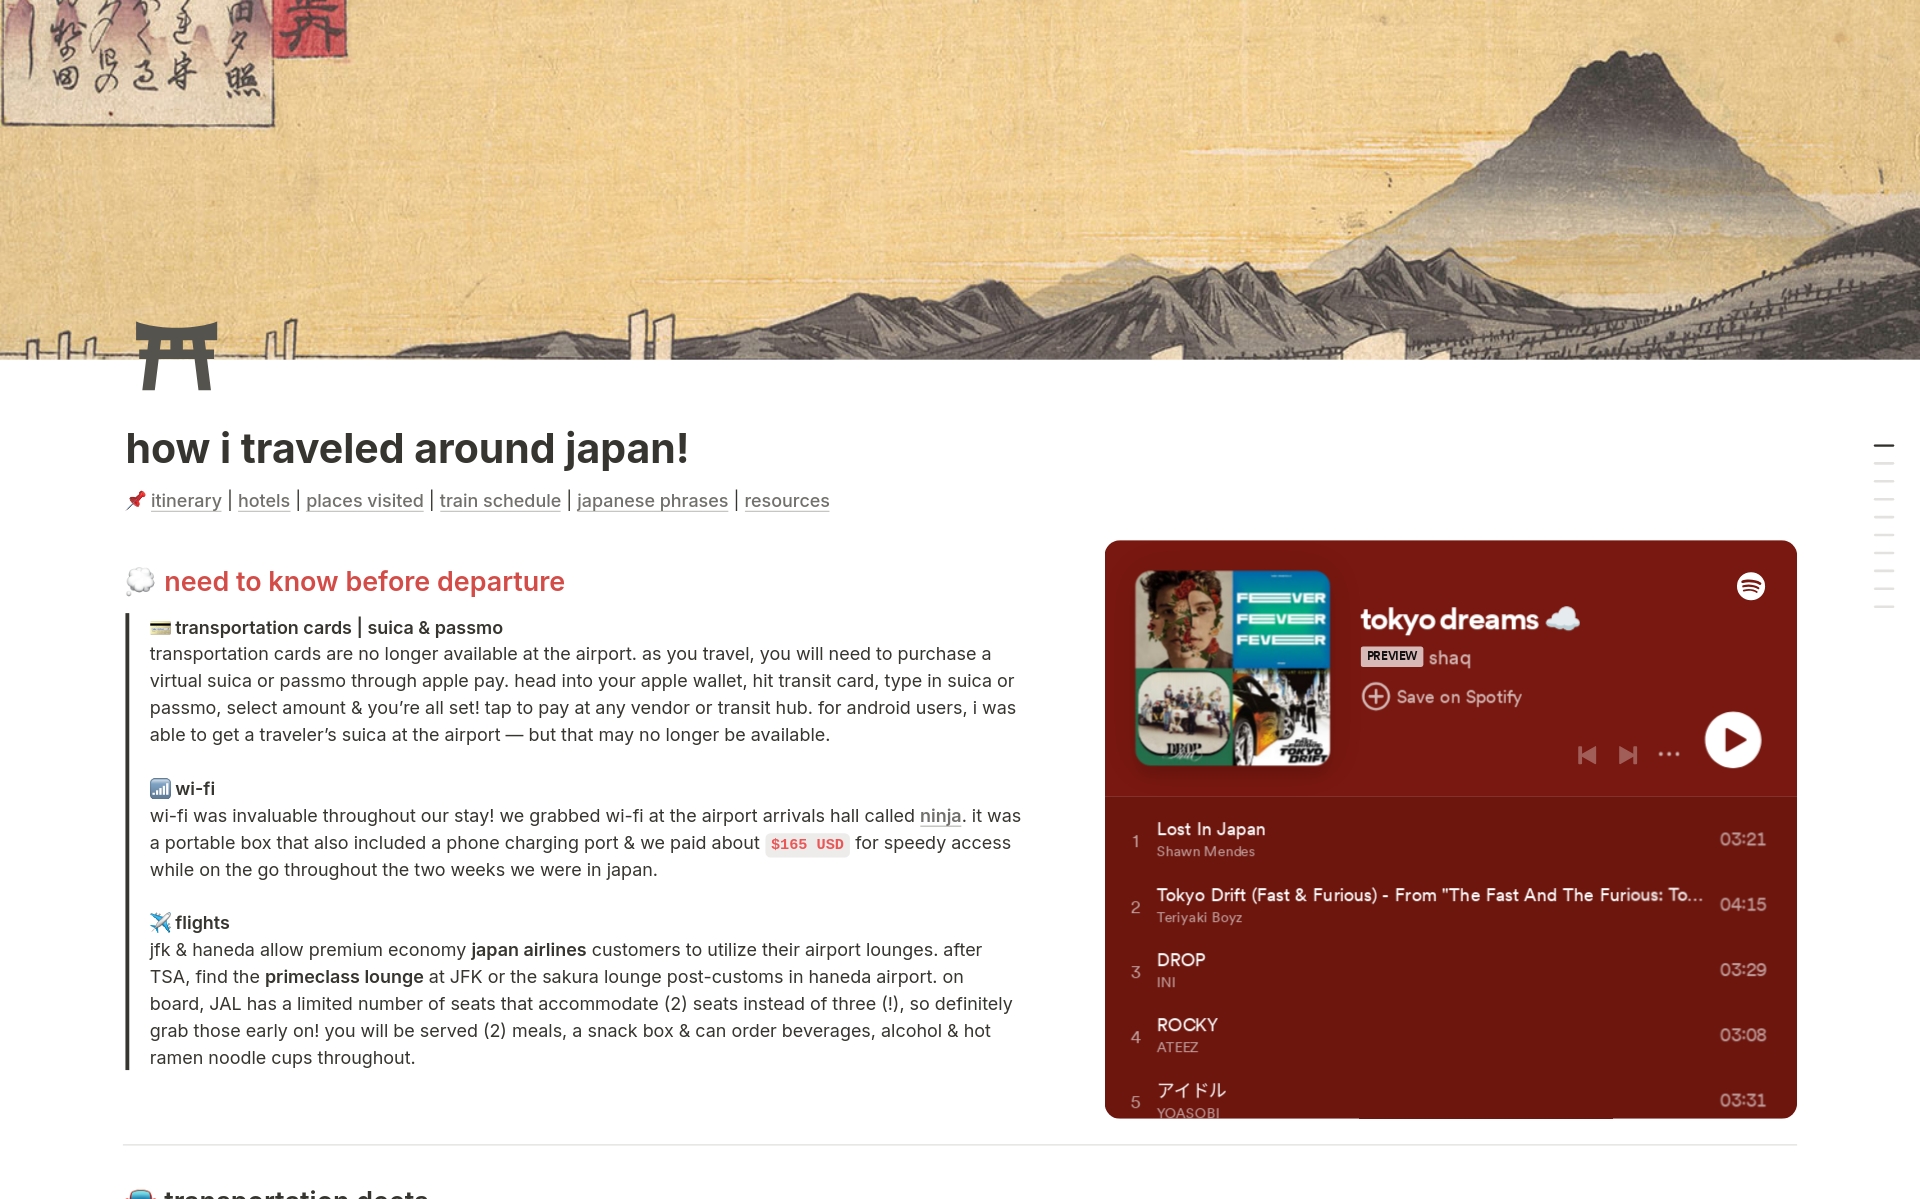 Uma prévia do modelo para japan travel guide